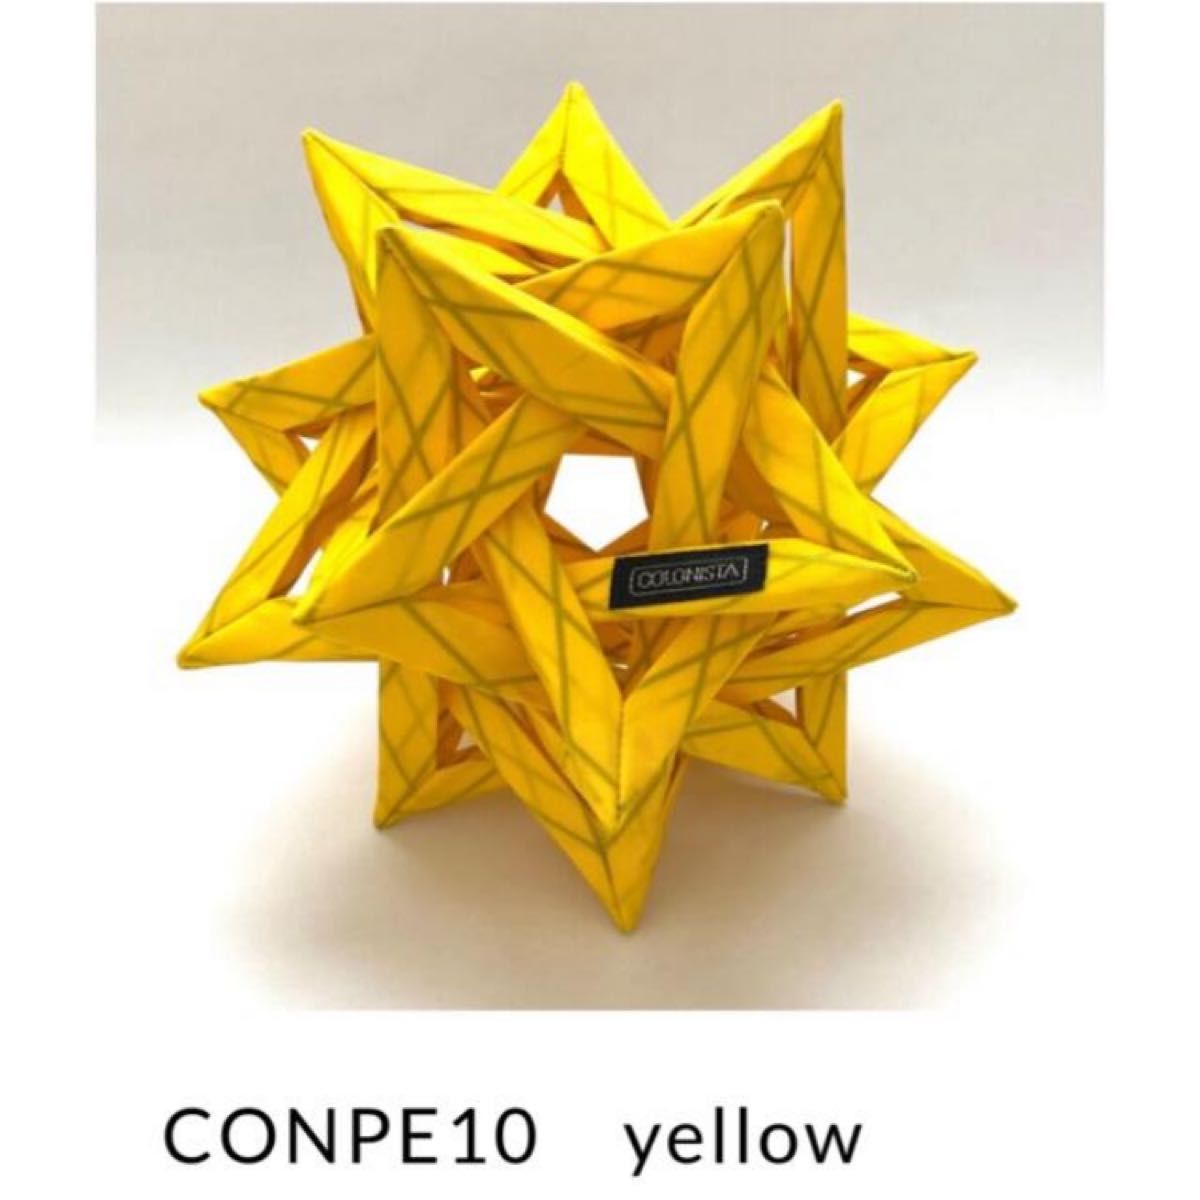 最低価格の 新品COLONISTA CONPE10 Spanish Teal general-bond.co.jp